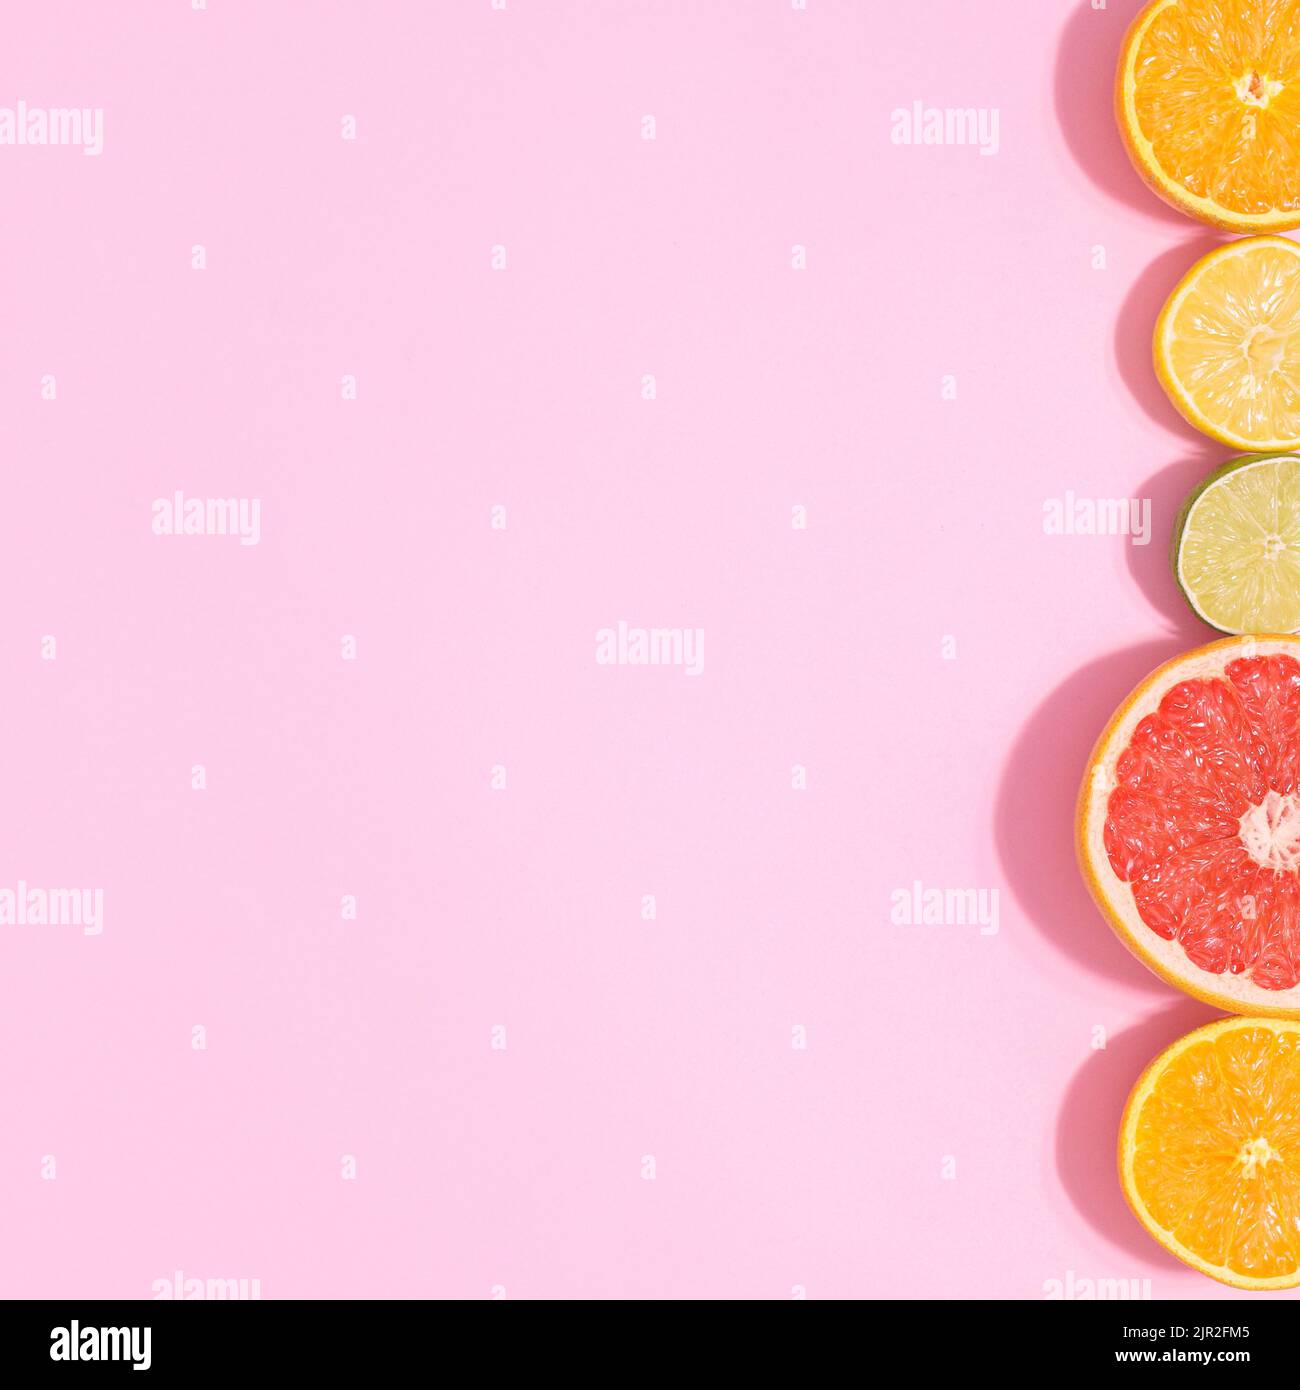 Pastellrosa Hintergrund mit geschnittenen Zitrusfrüchten auf der rechten Seite. Kopierraum flach lat. Sommerkonzept Stockfoto